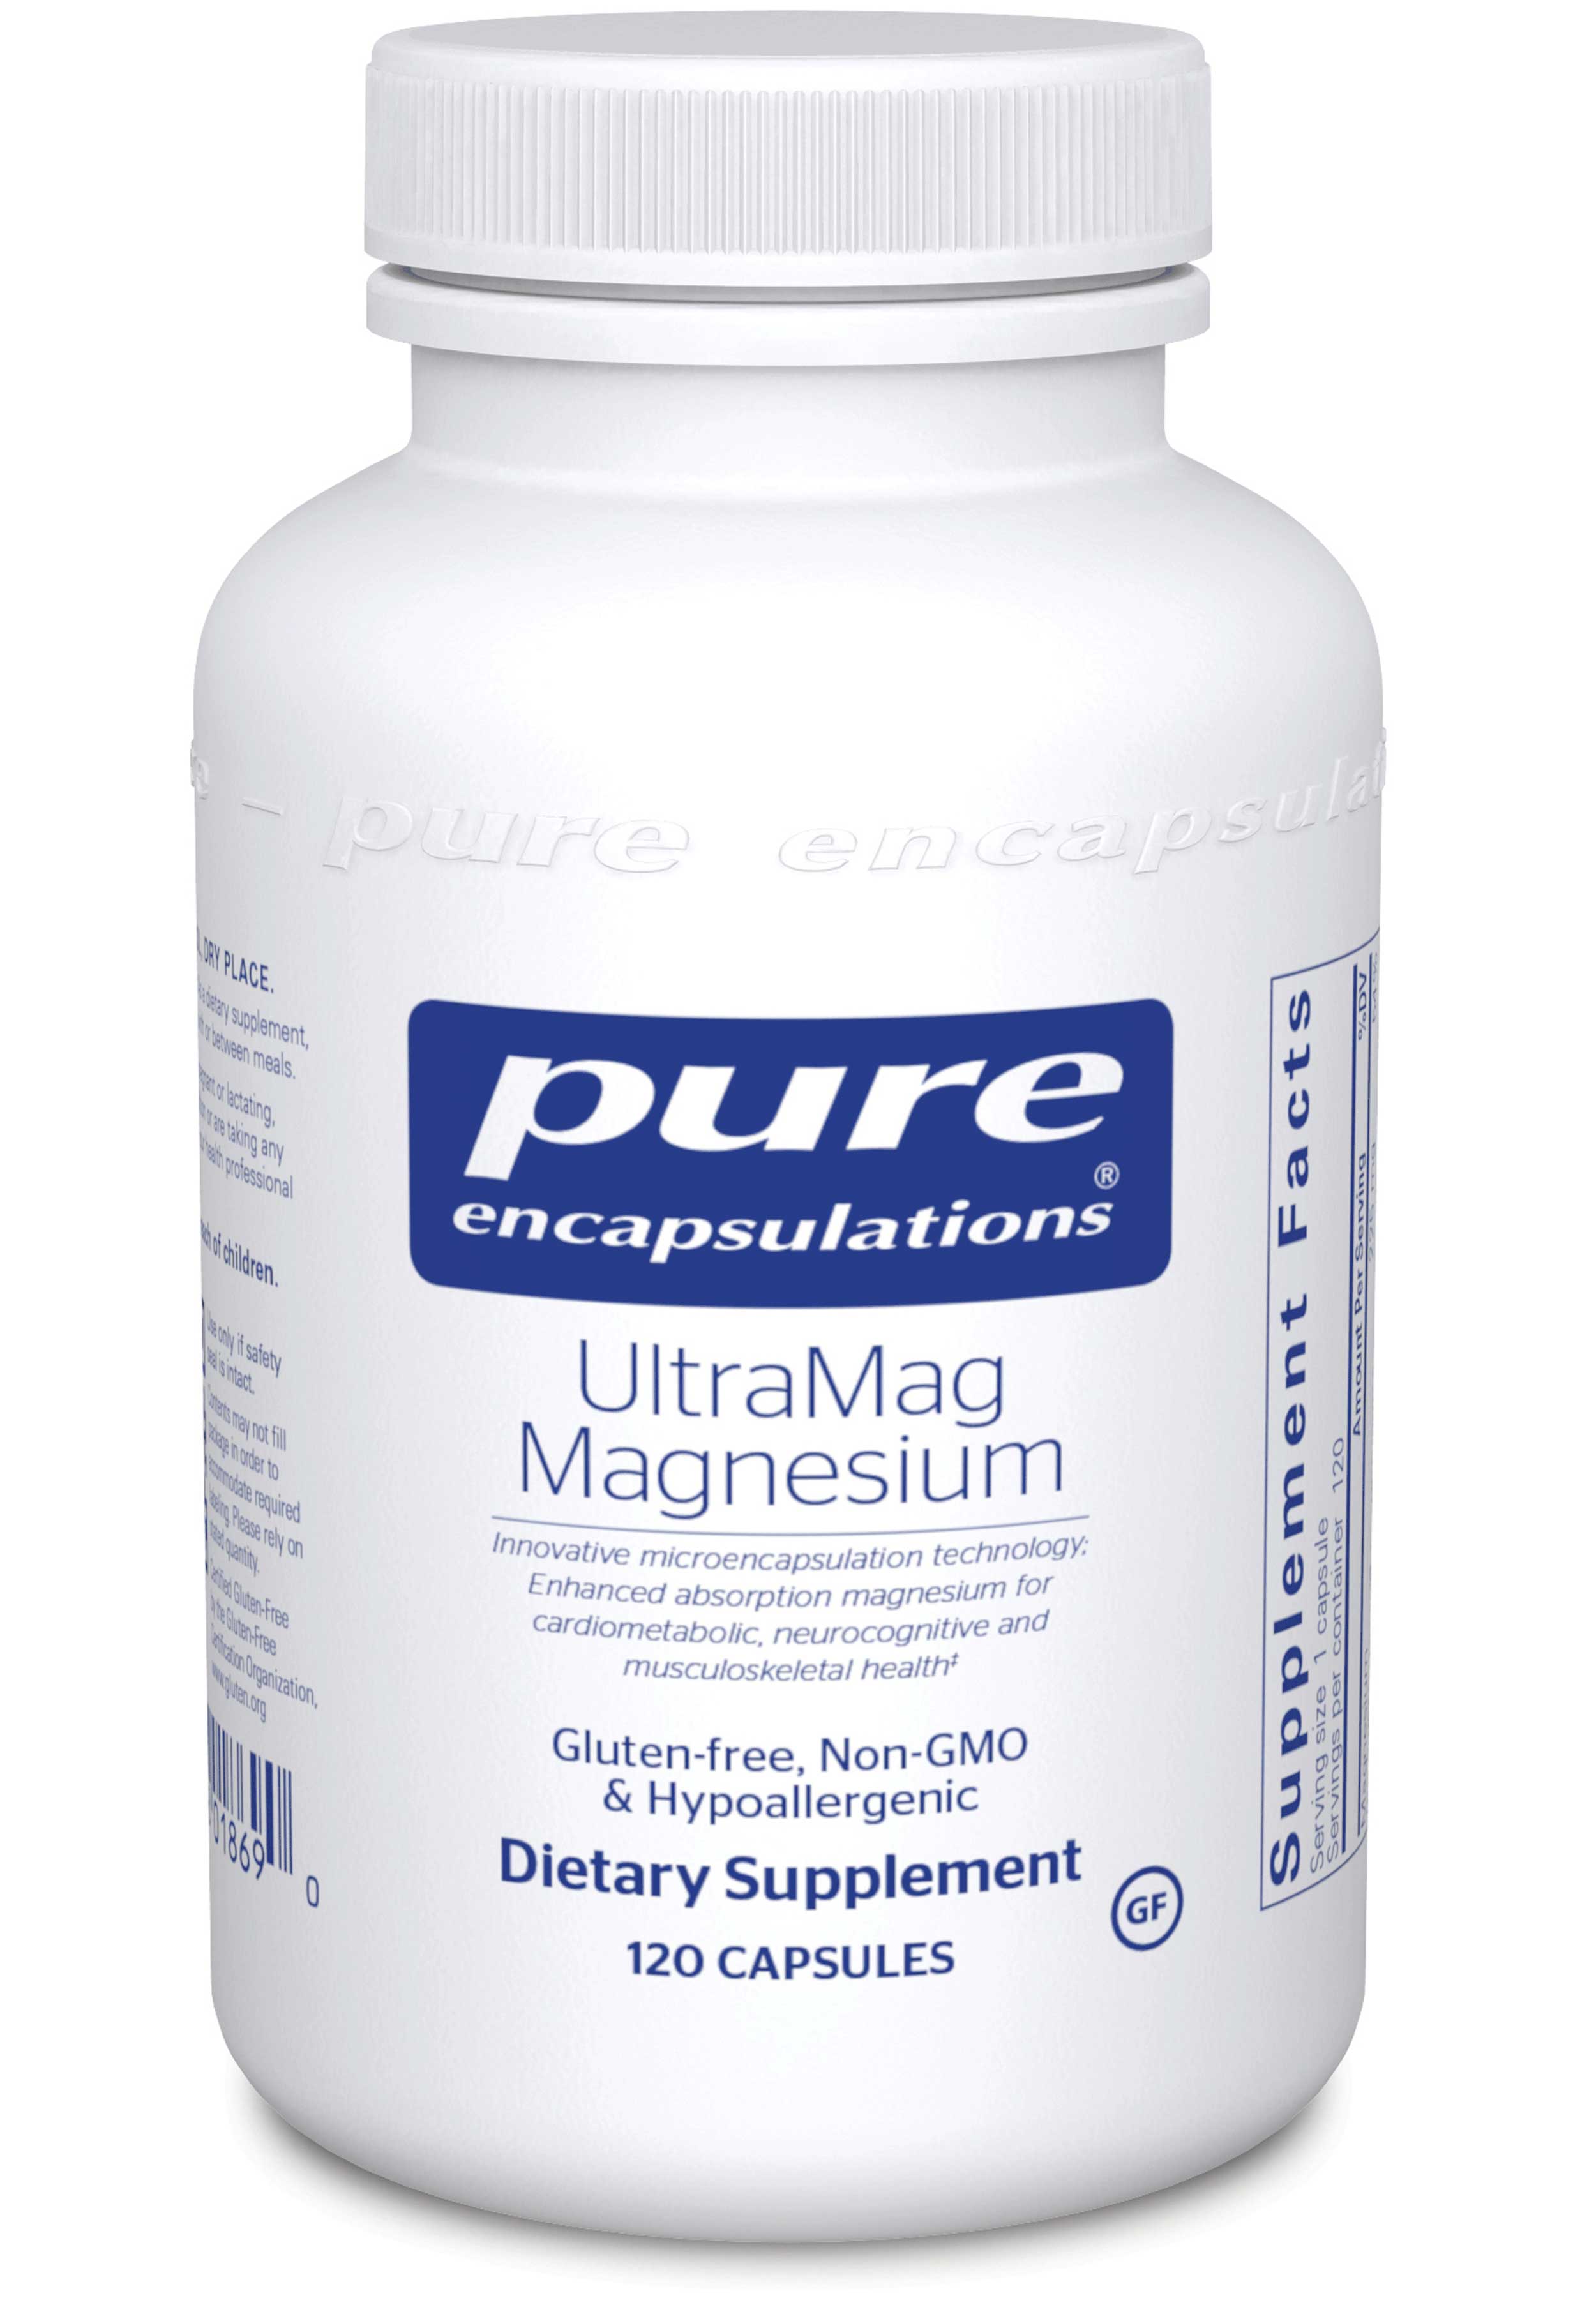 Pure Encapsulations UltraMag Magnesium